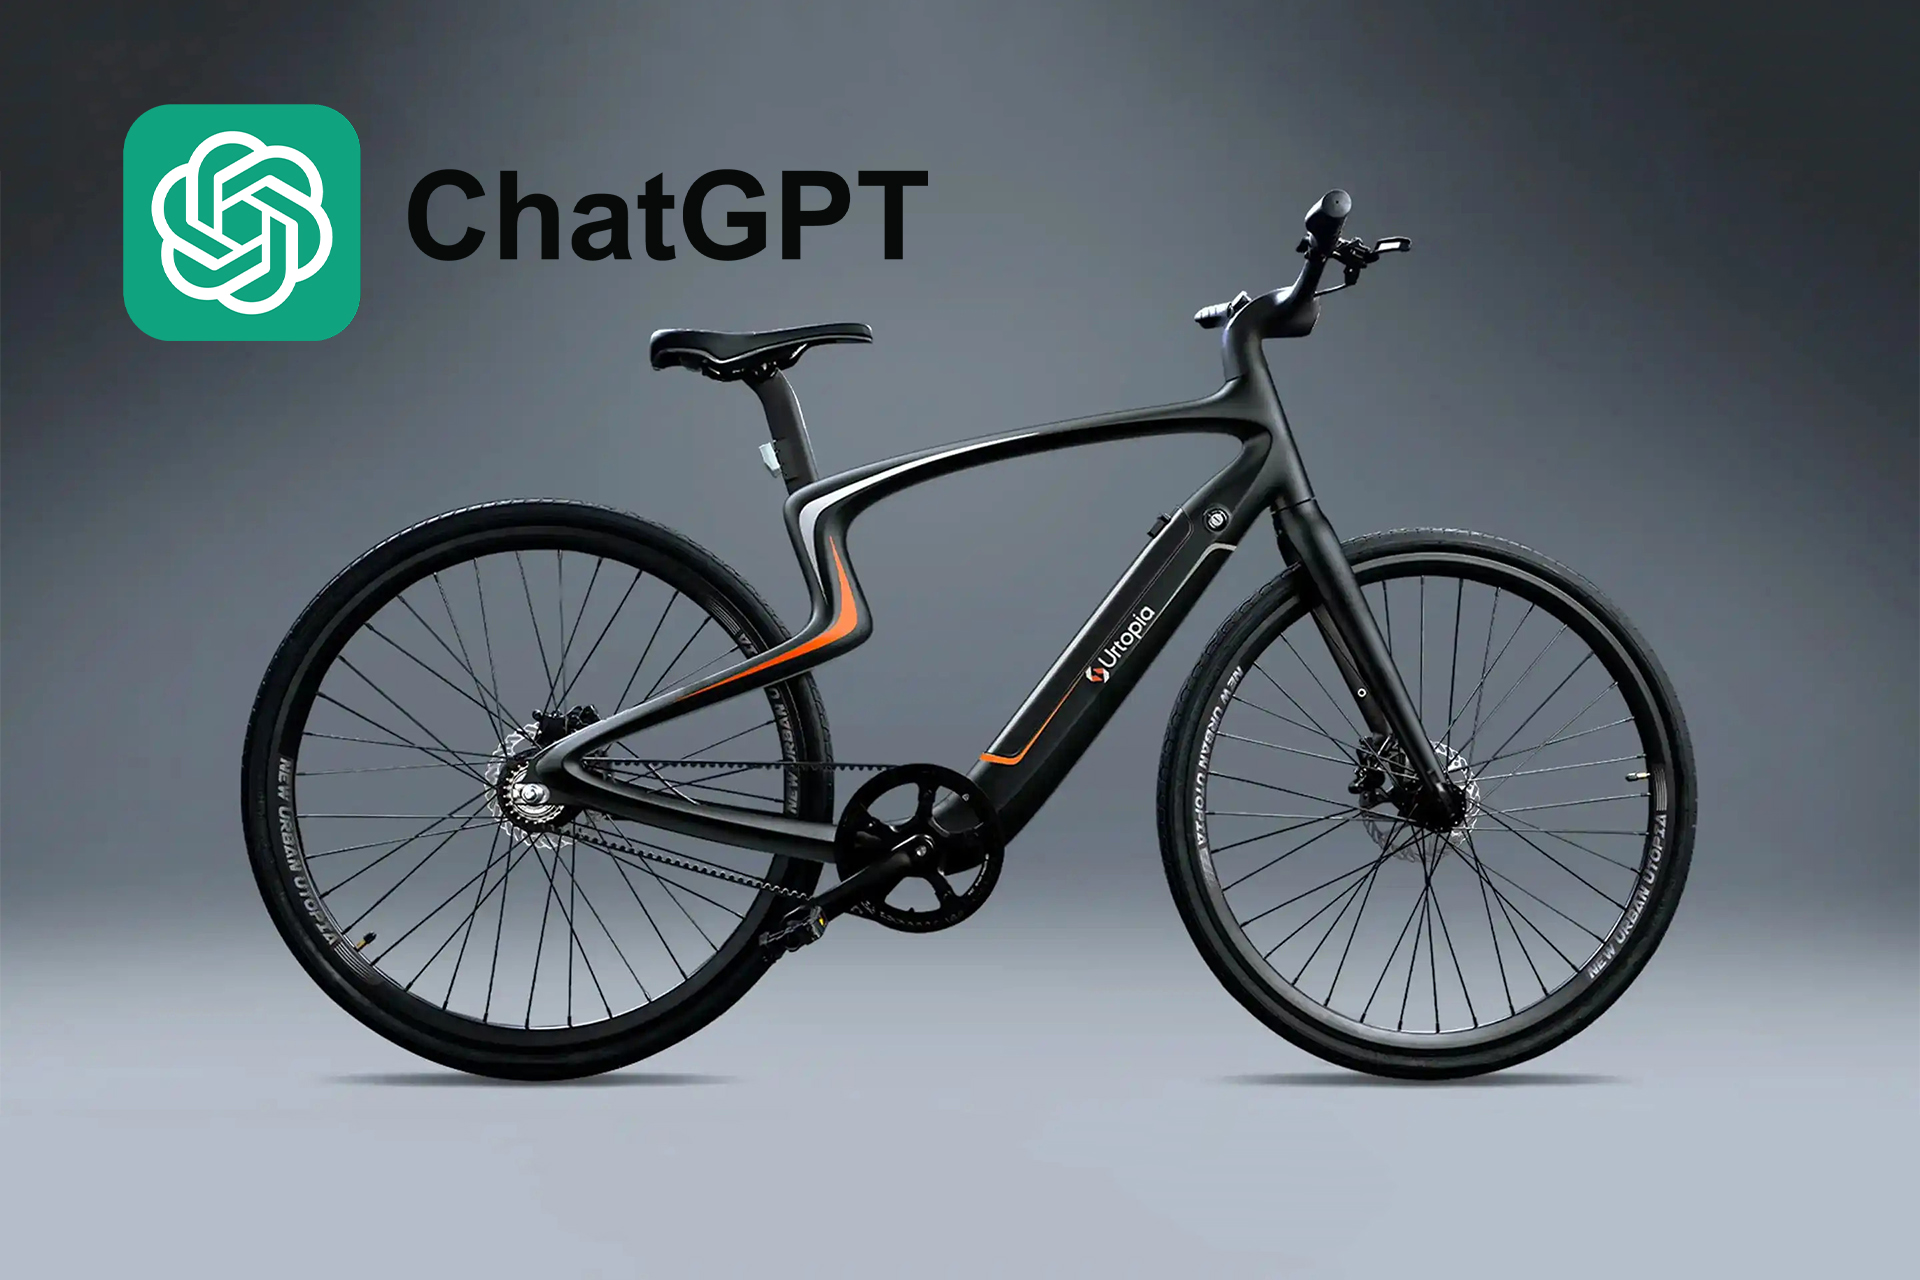 Empresa desenvolve primeira bicicleta elétrica equipada com ChatGPT